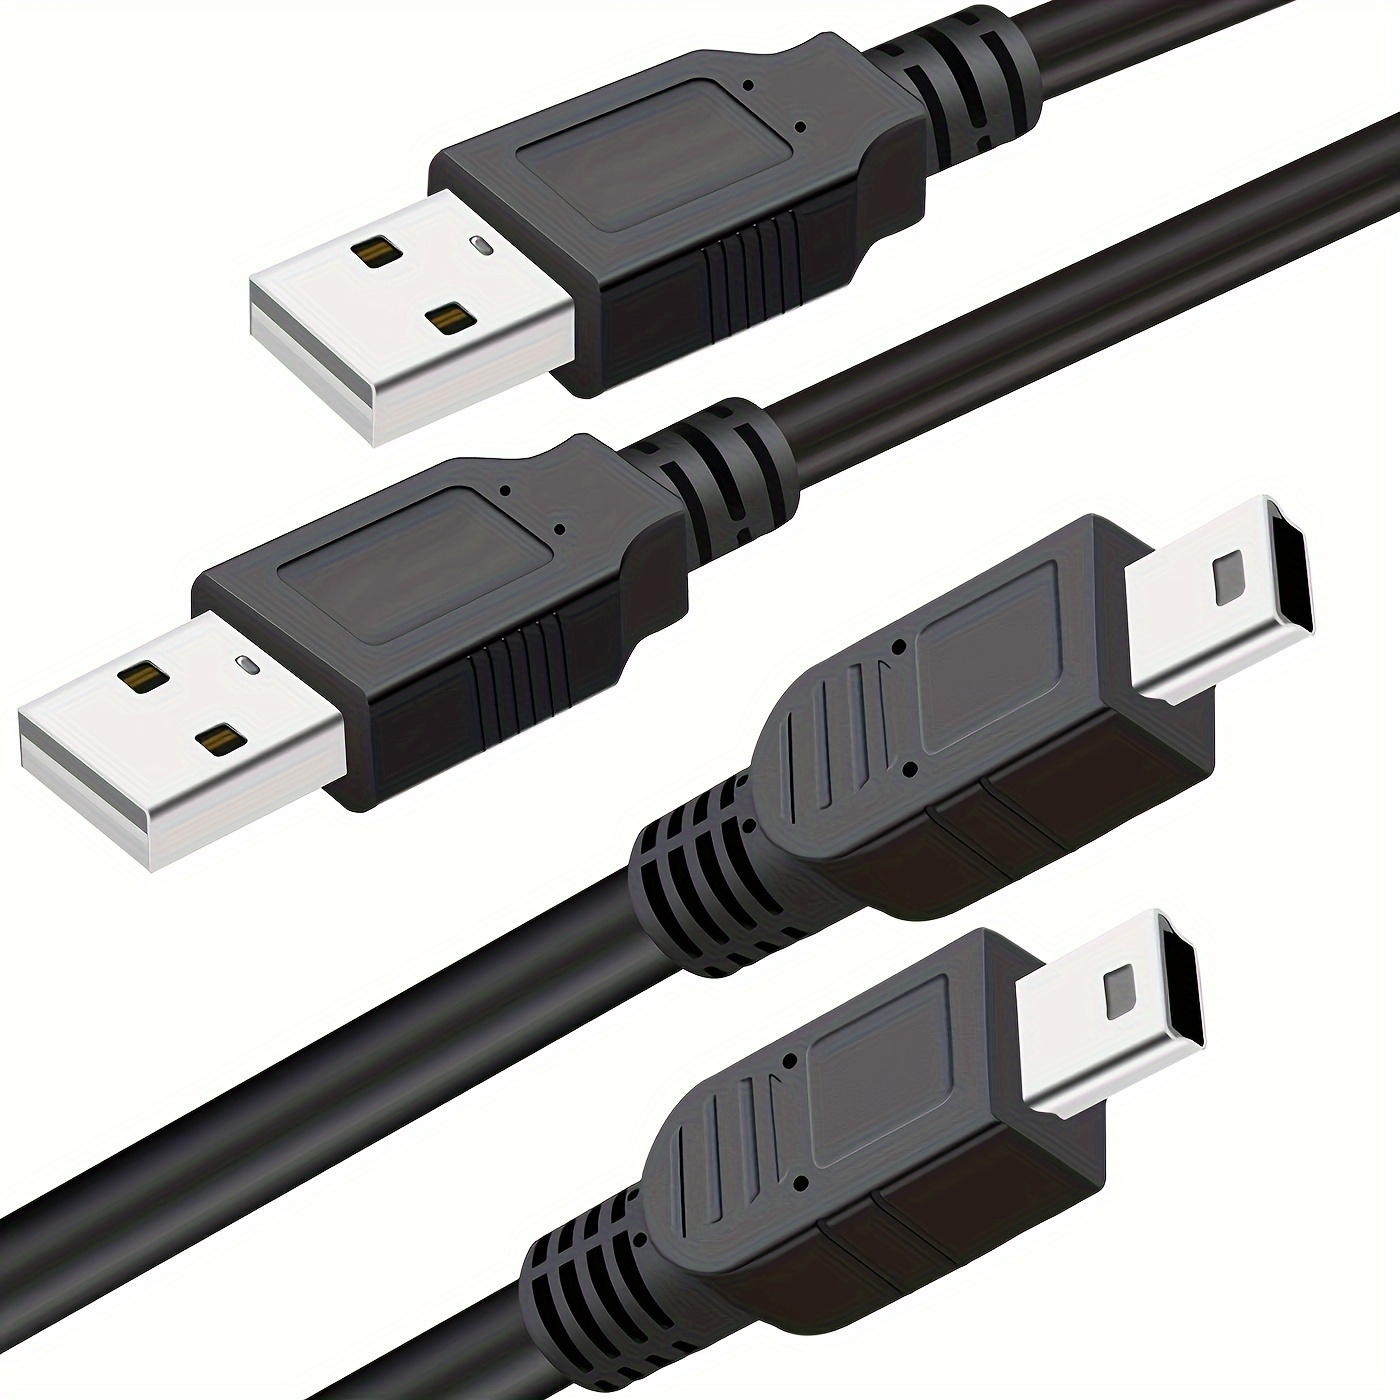 Câble de chargement USB, 1 m, pour manette PS3, playstation 3